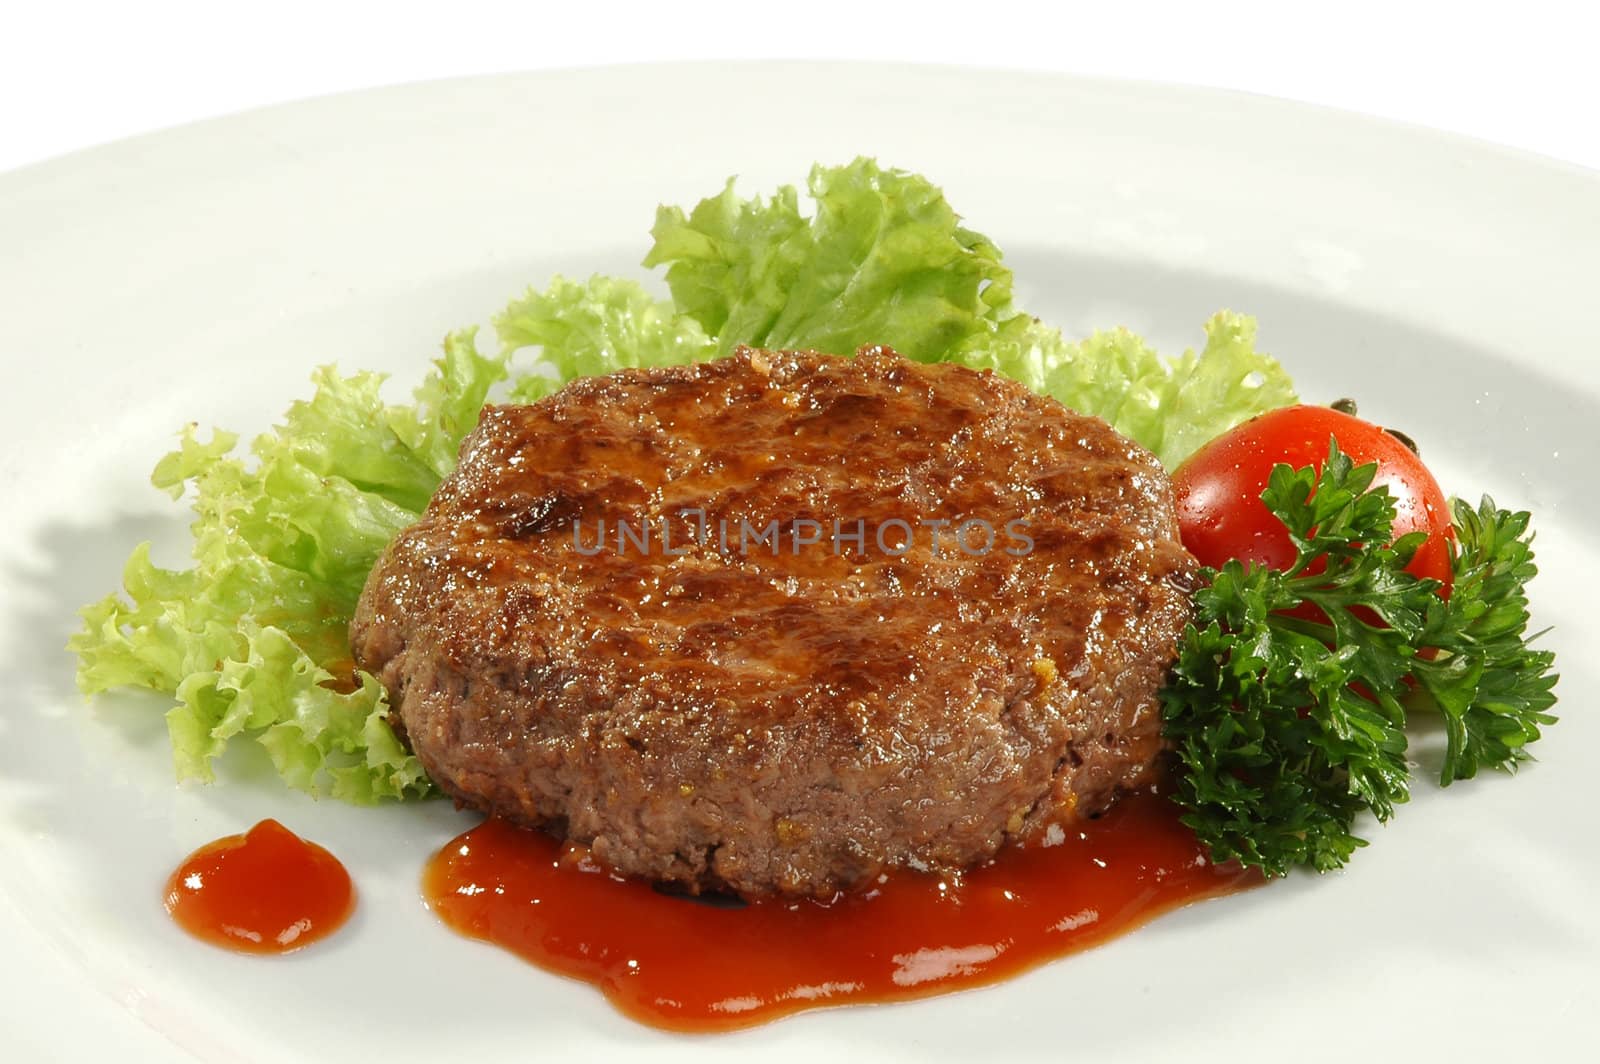 beefsteak under sauce on white plate